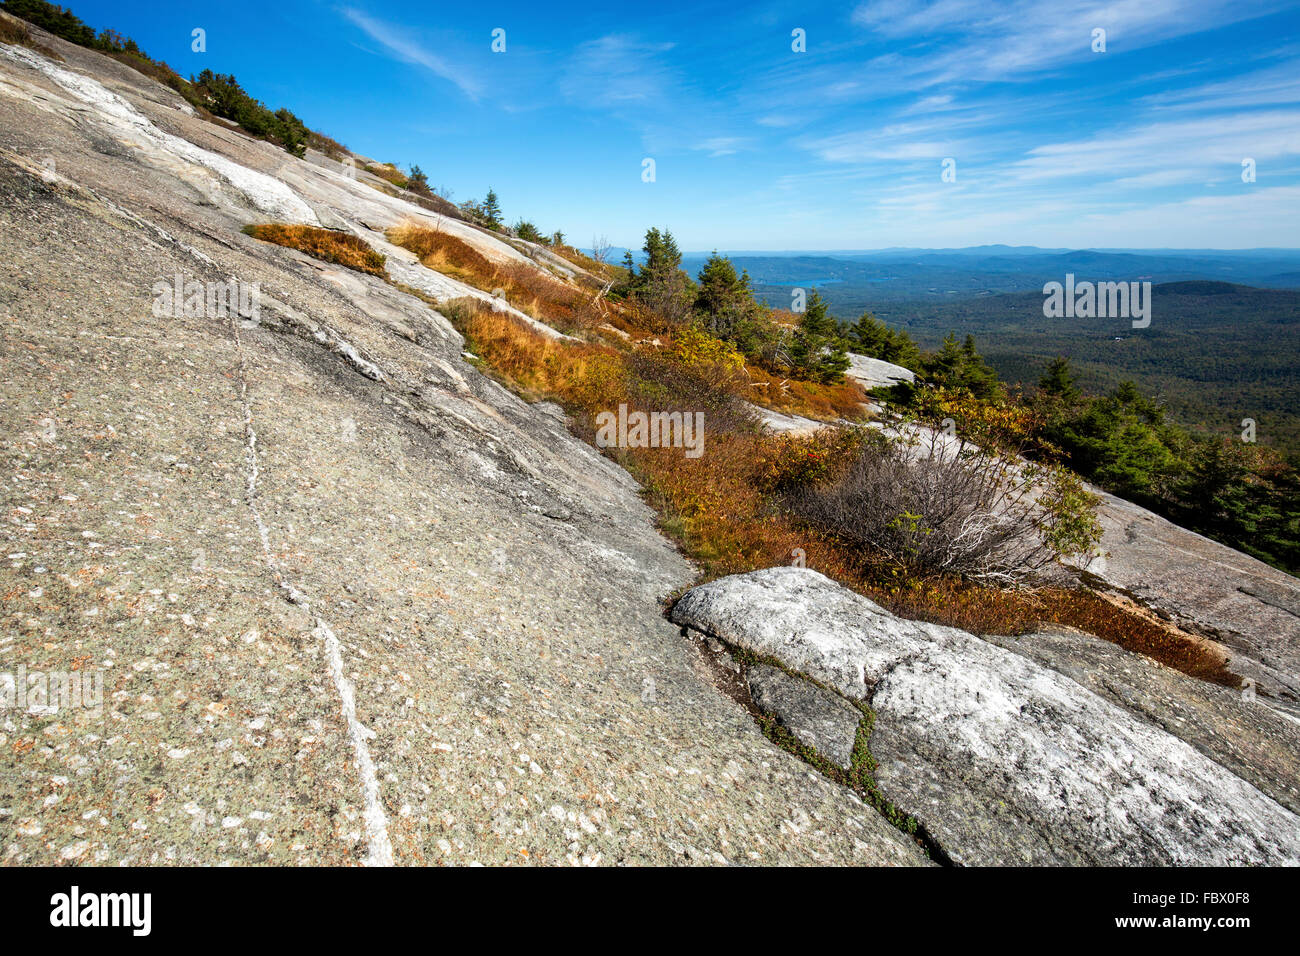 Granit exposées et la végétation alpine sur le sommet du mont. Cardigan, près de Grafton, New Hampshire, avec une vue sur les montagnes. Banque D'Images